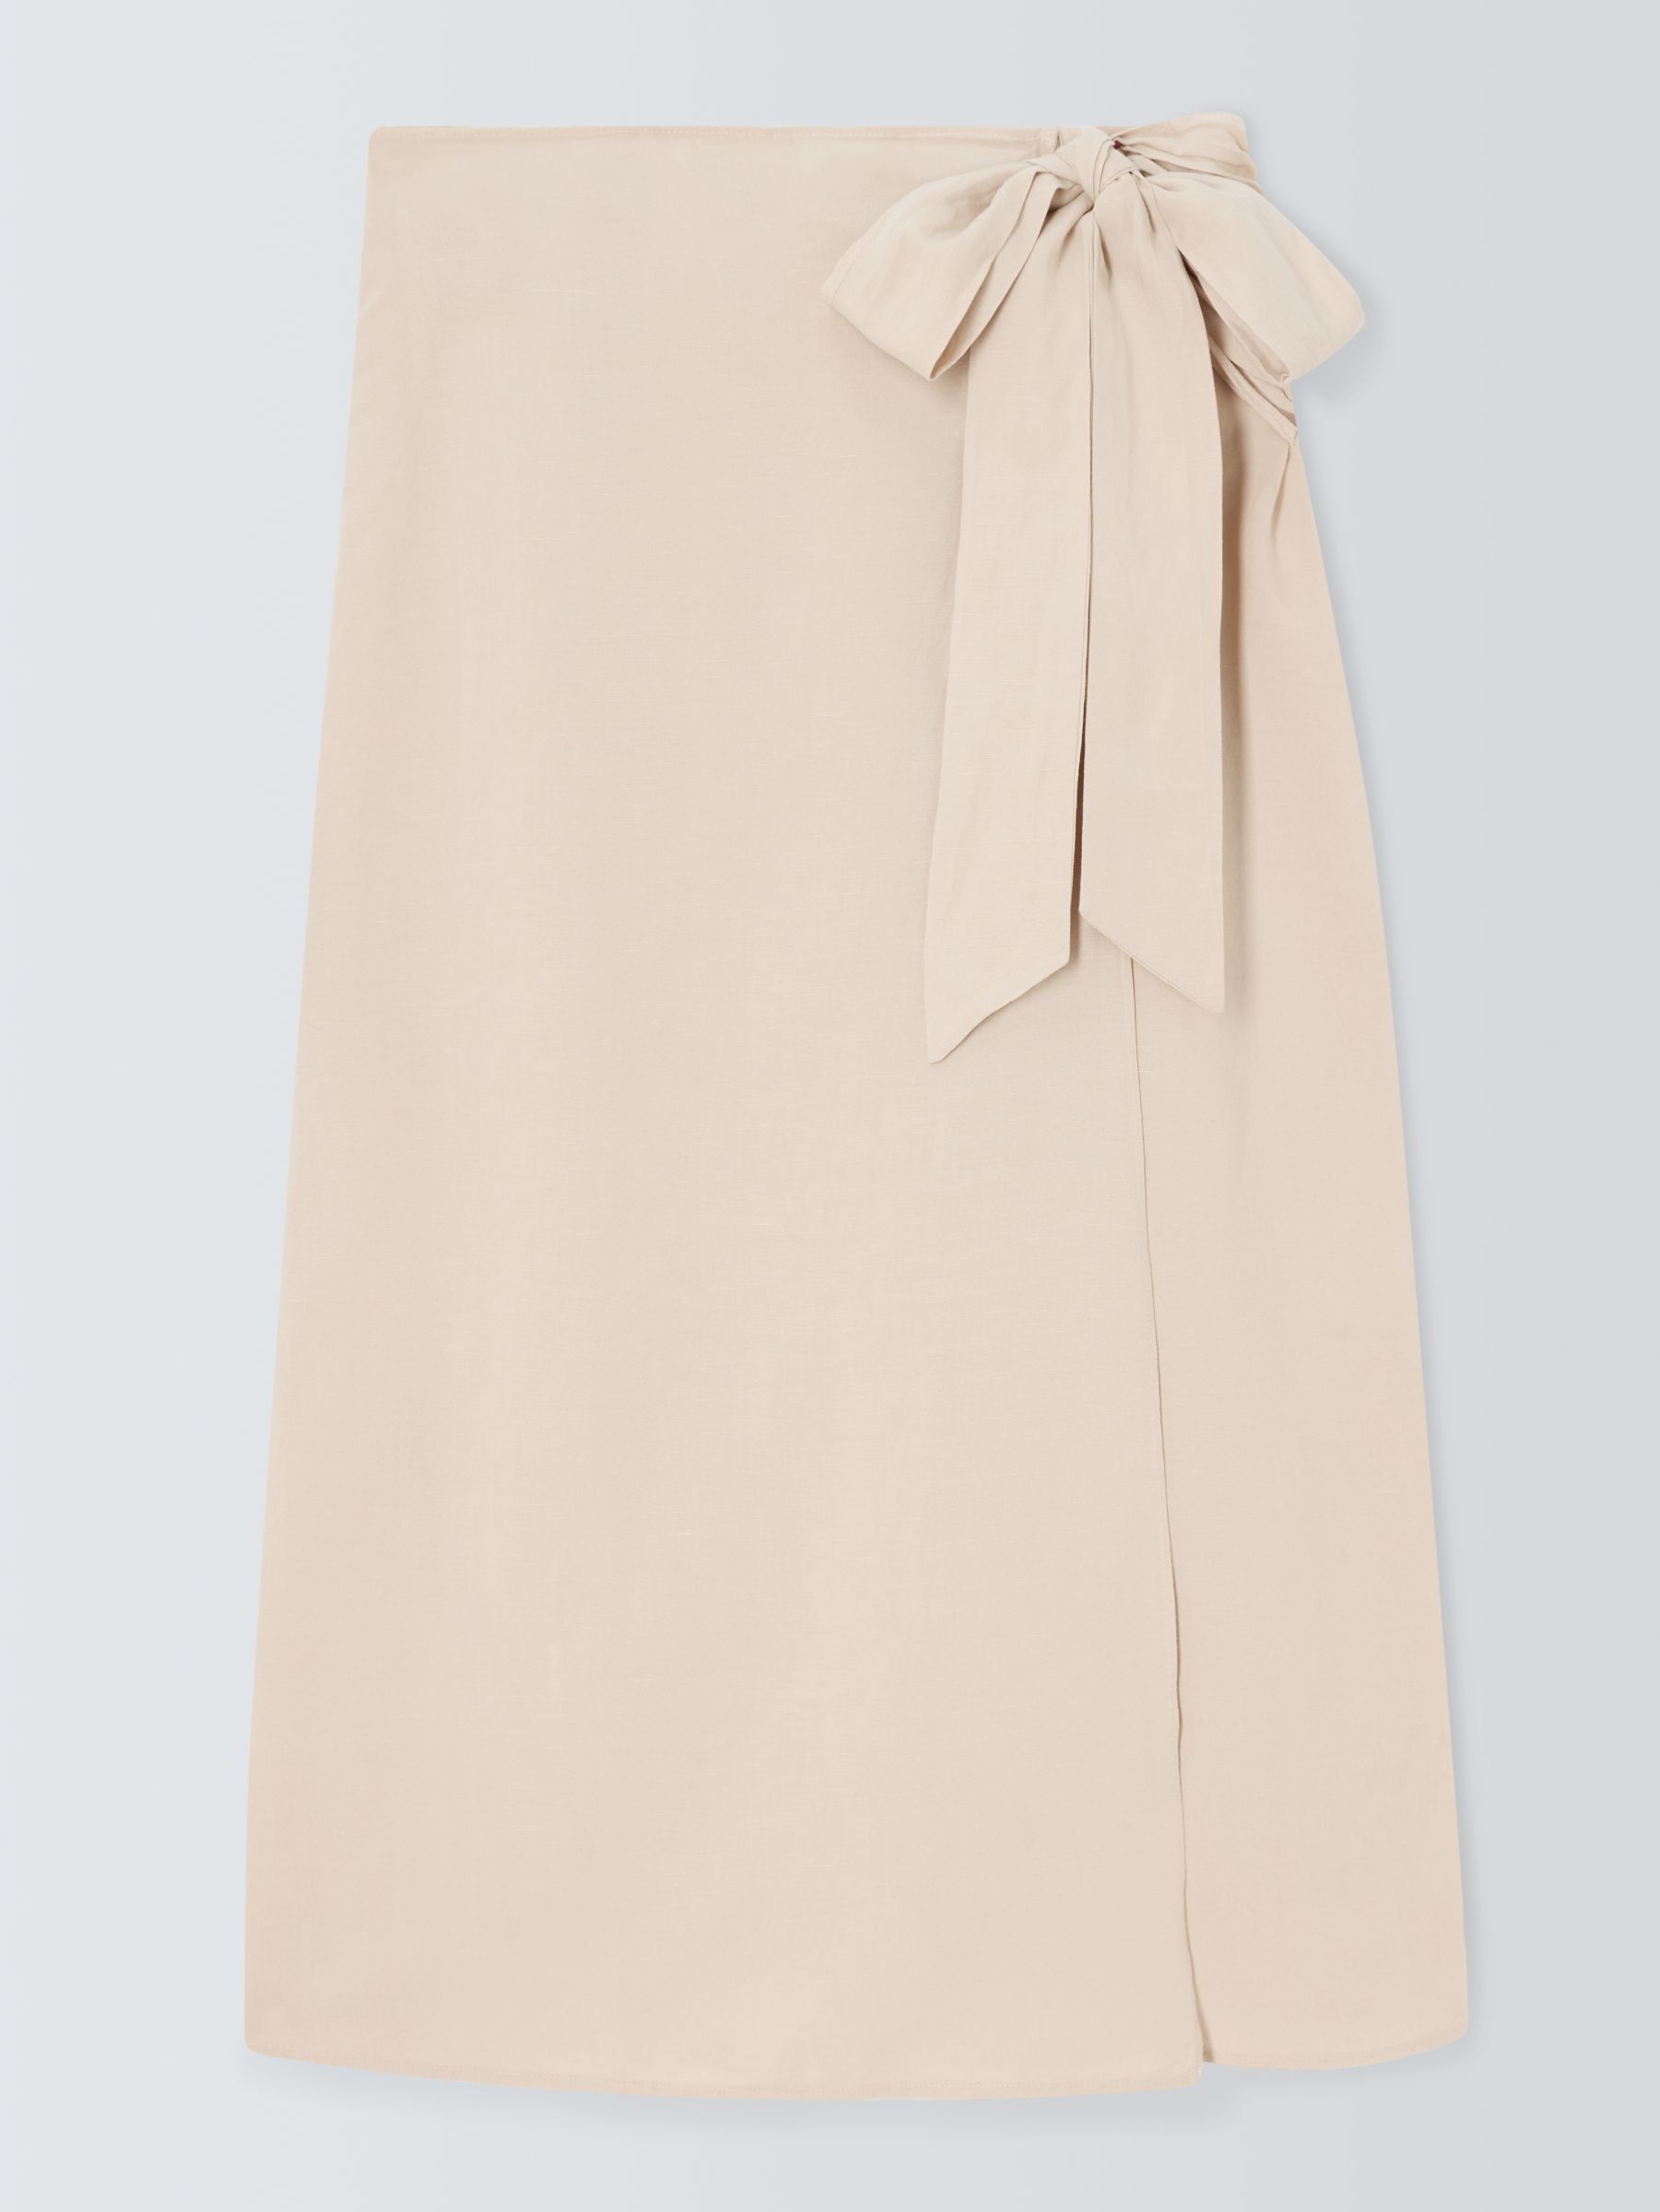 John Lewis ANYDAY Tie Waist Linen Blend Sarong Skirt, Oatmeal, 16